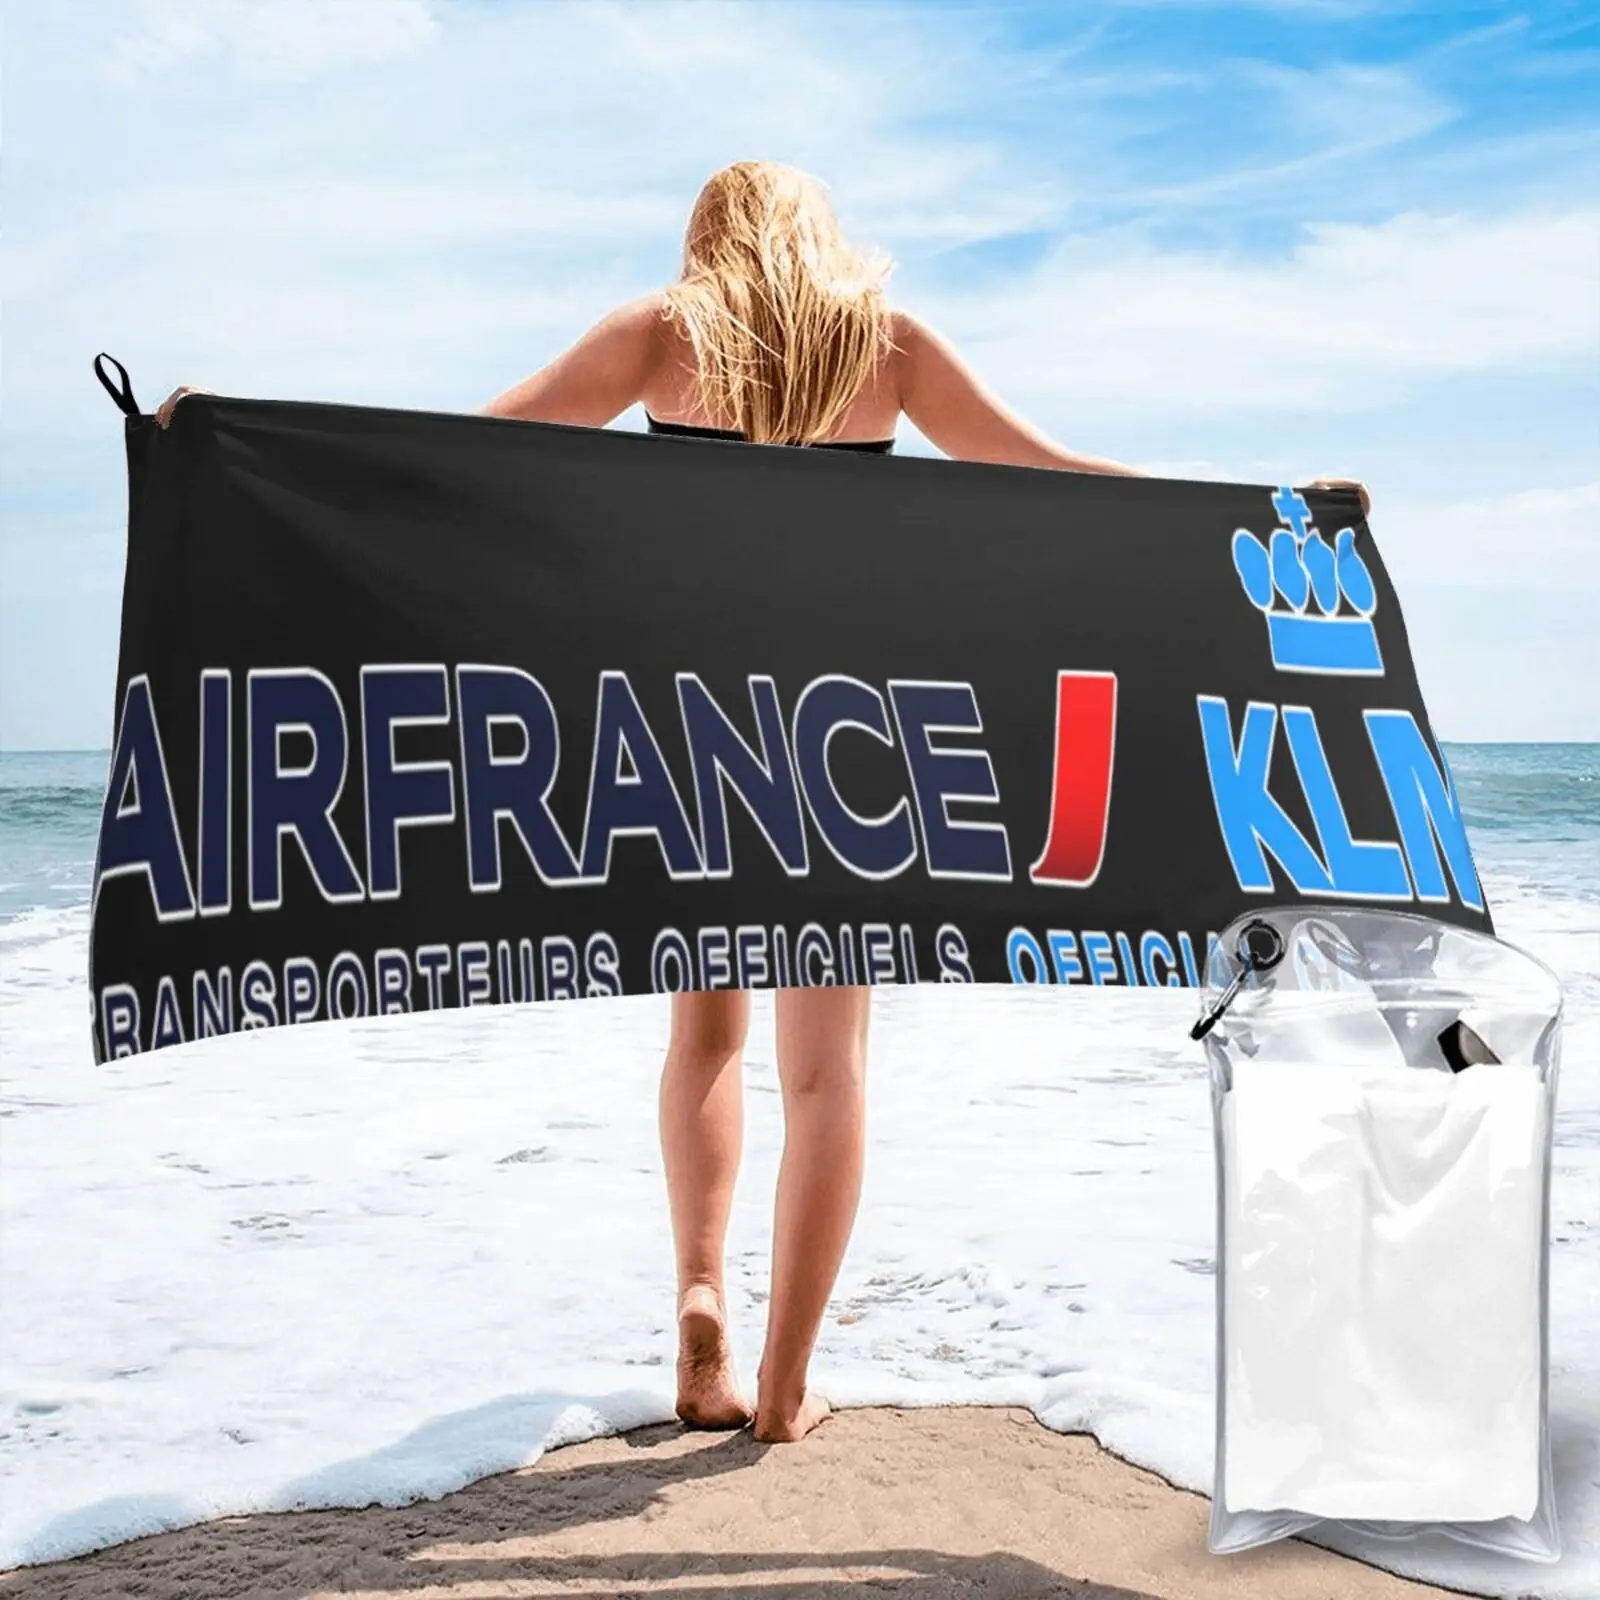 

Пляжное полотенце Air France Klm 1, Большое пляжное полотенце, набор аксессуаров для ванной комнаты, женский халат, полотенце для волос, Пляжная на...